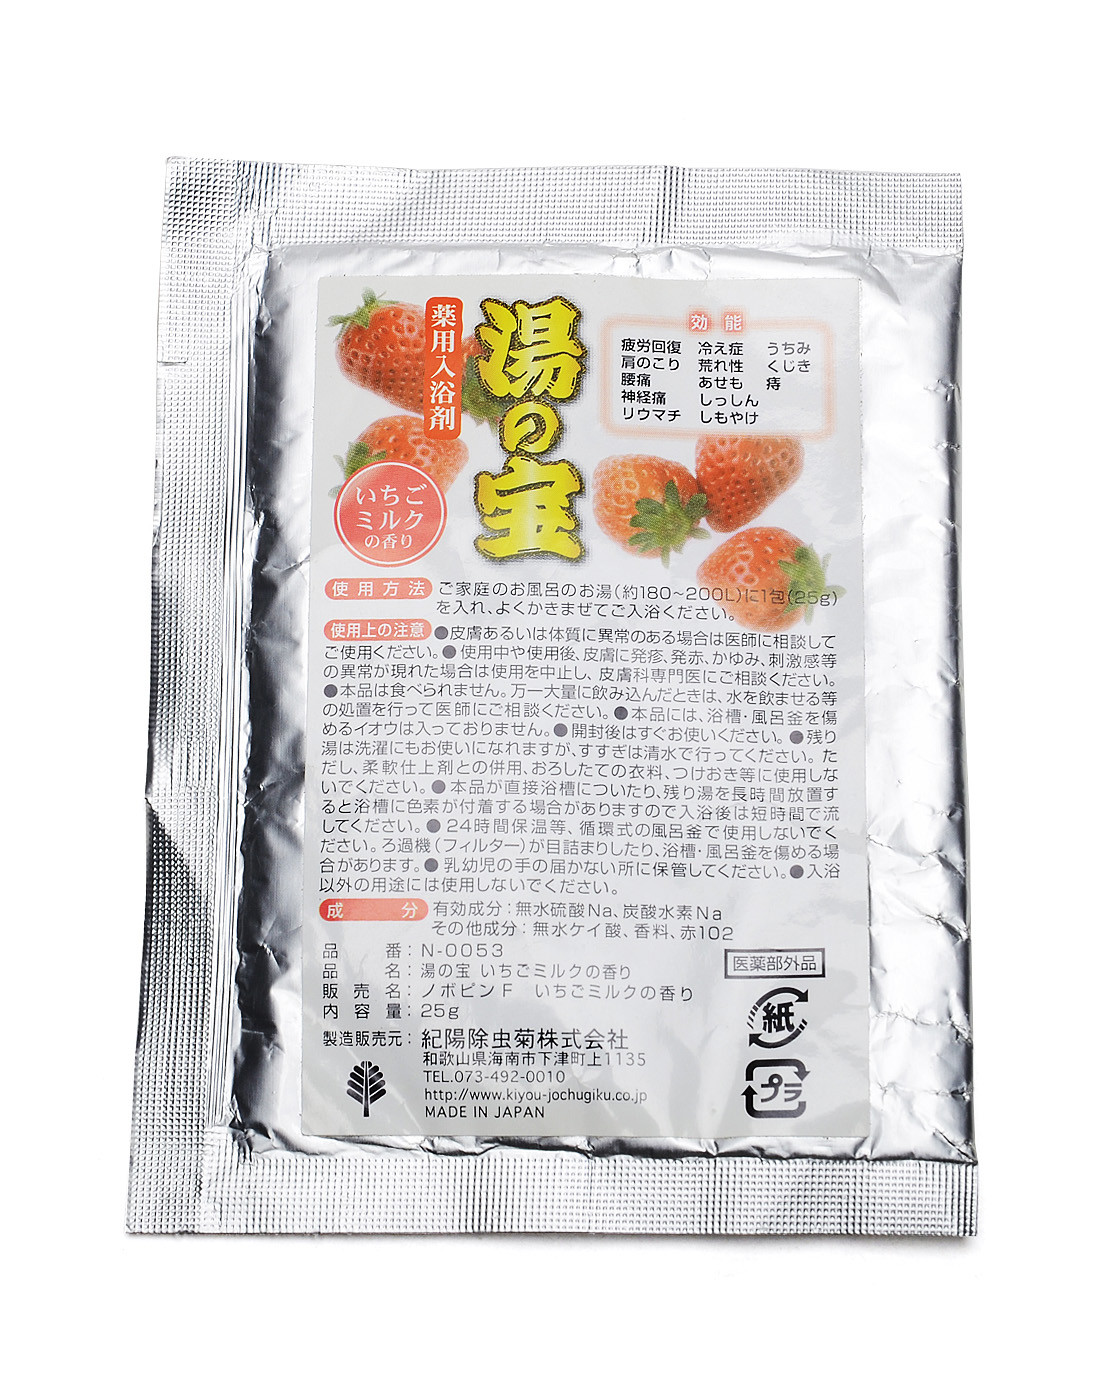 原装进口日本草莓味浴盐25G